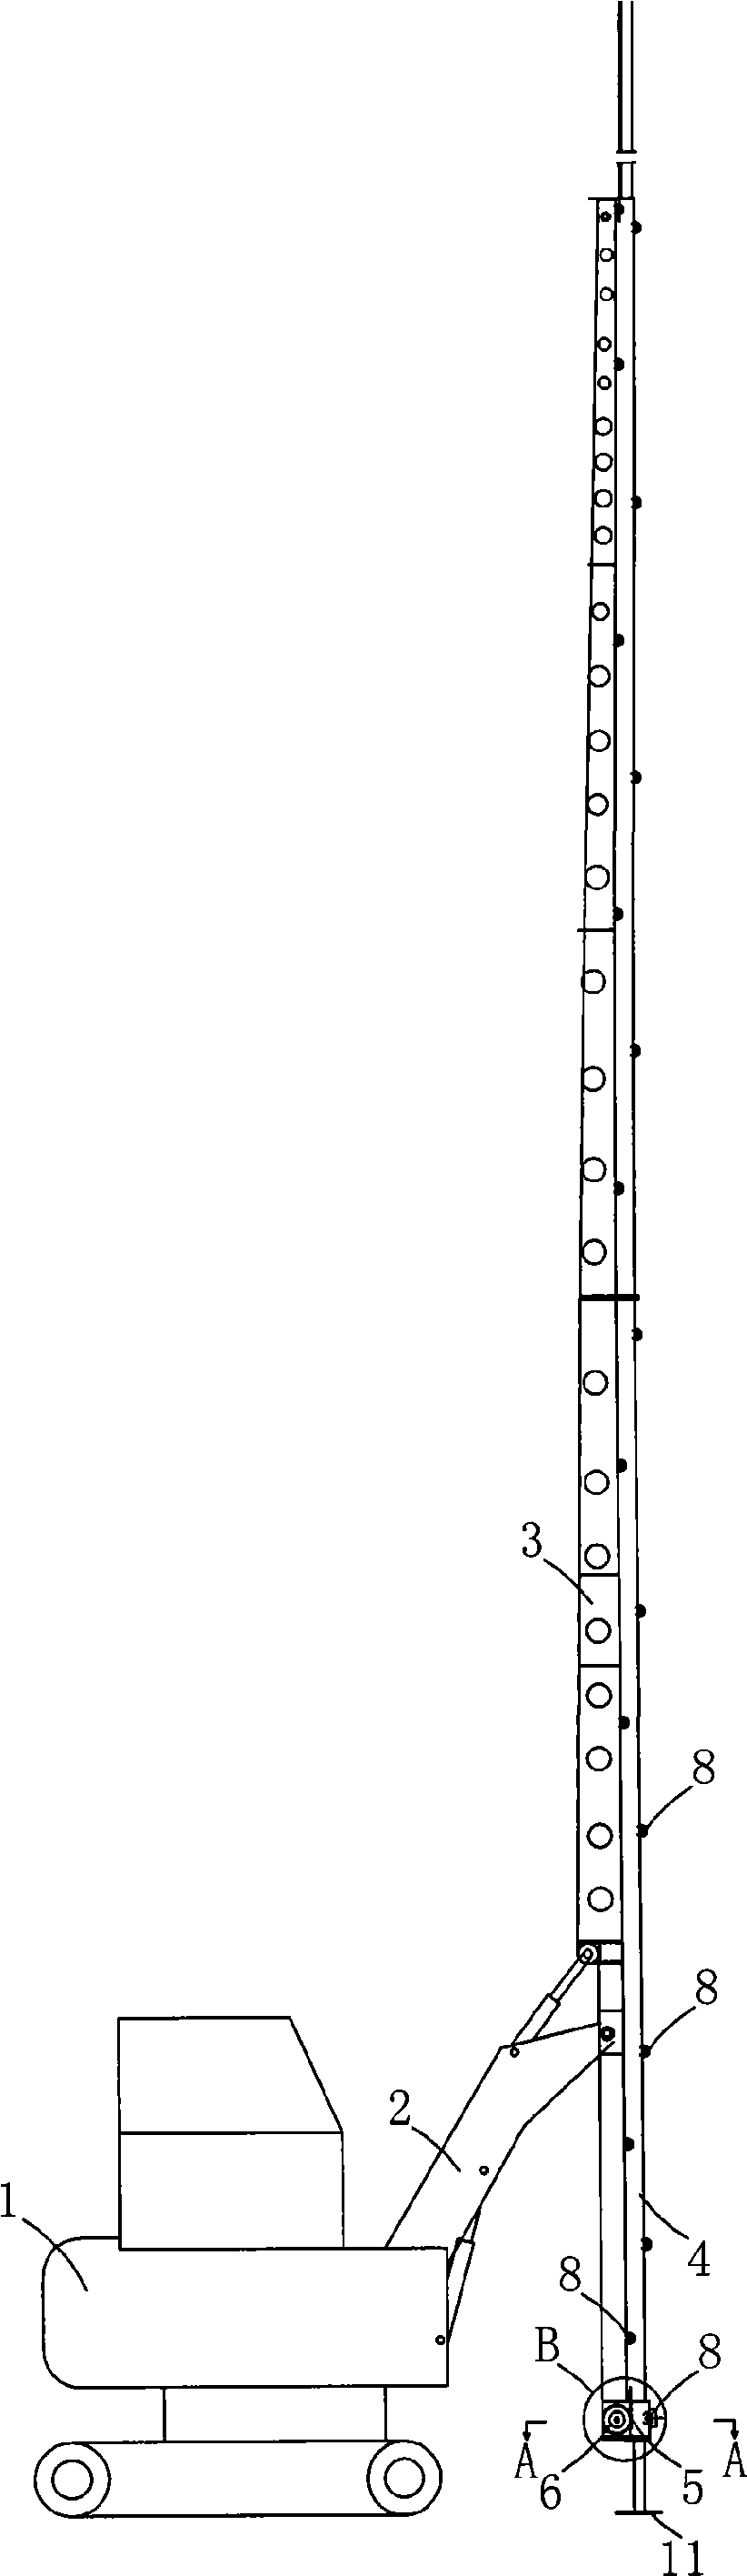 Rack type board plugging machine